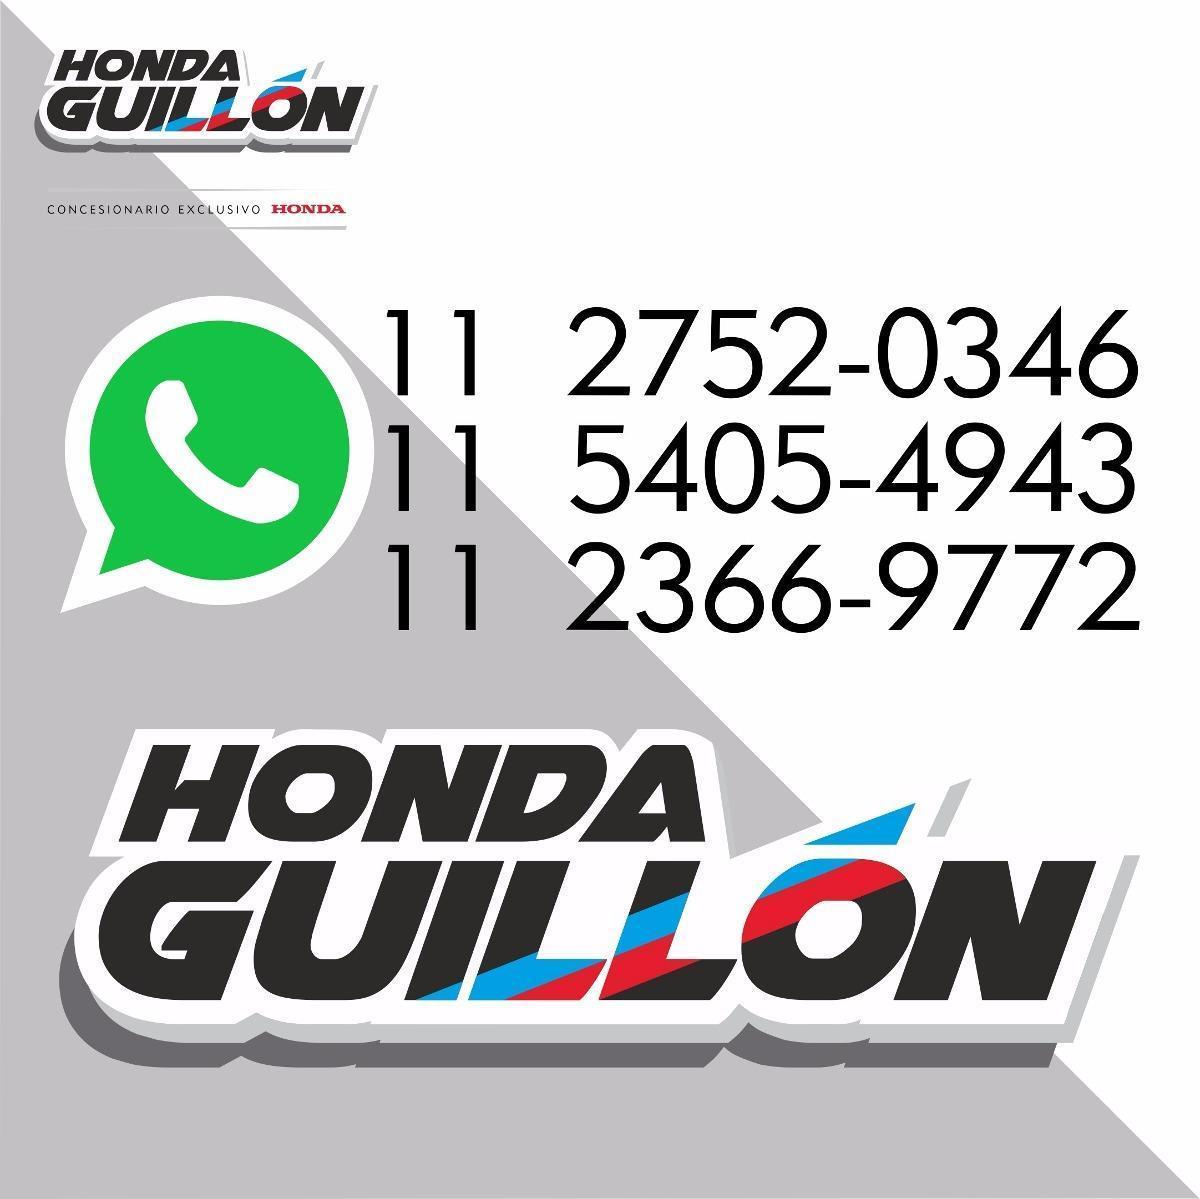 Honda Pcx 150 Garantía Extendida 3 Años Honda Guillon